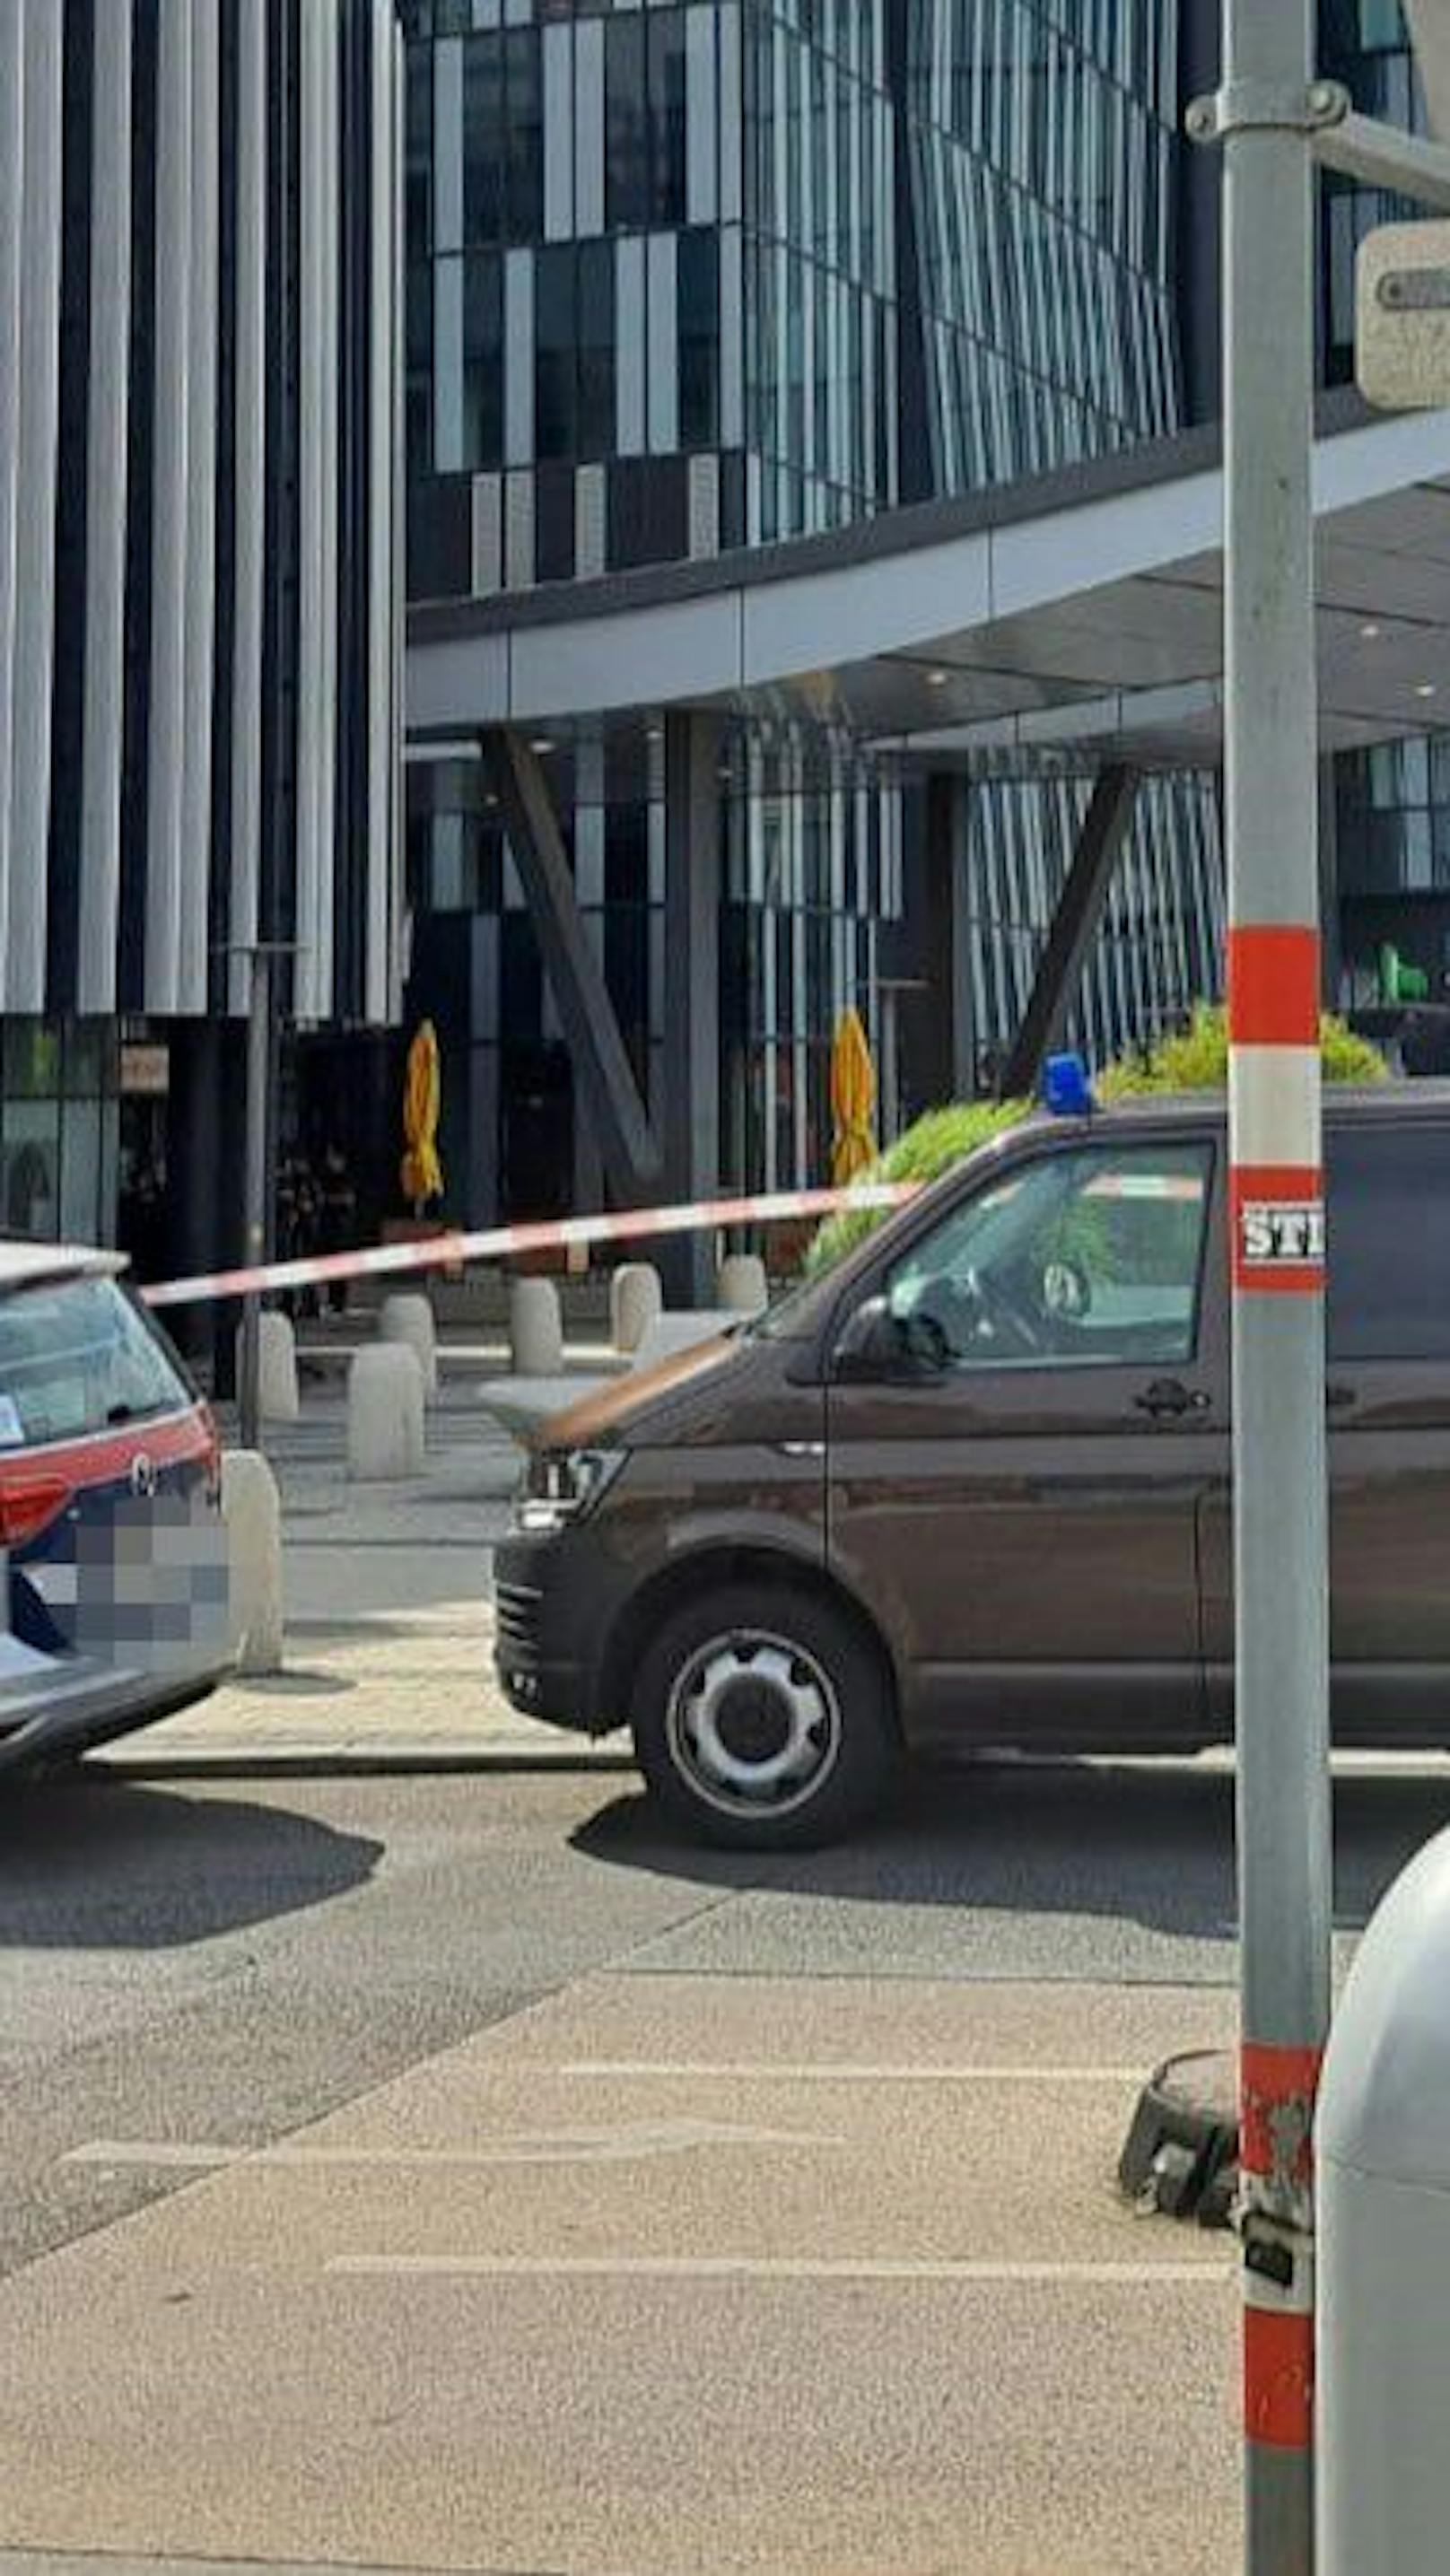 "Bombe hineinwerfen" – Polizei sperrt Bank in Wien ab